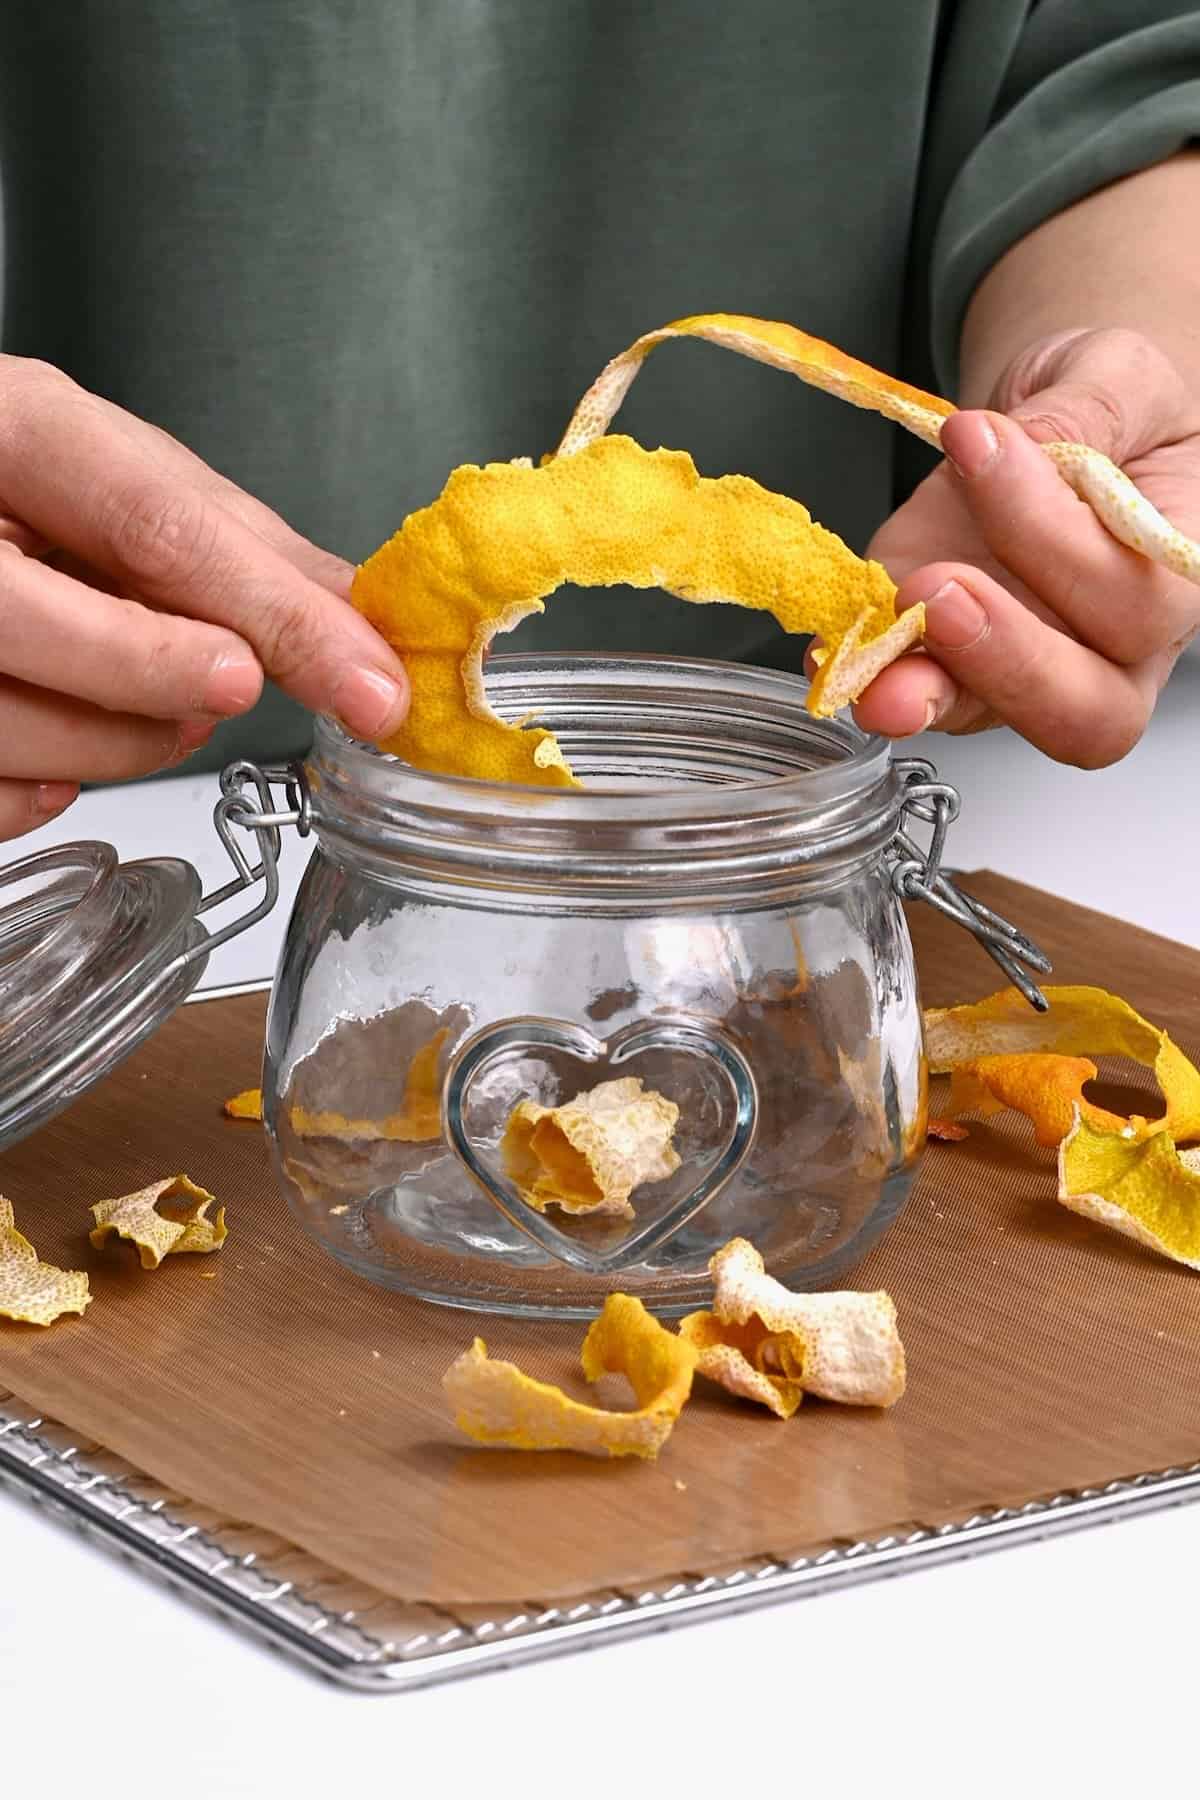 Storing deydrated lemon peel in a jar